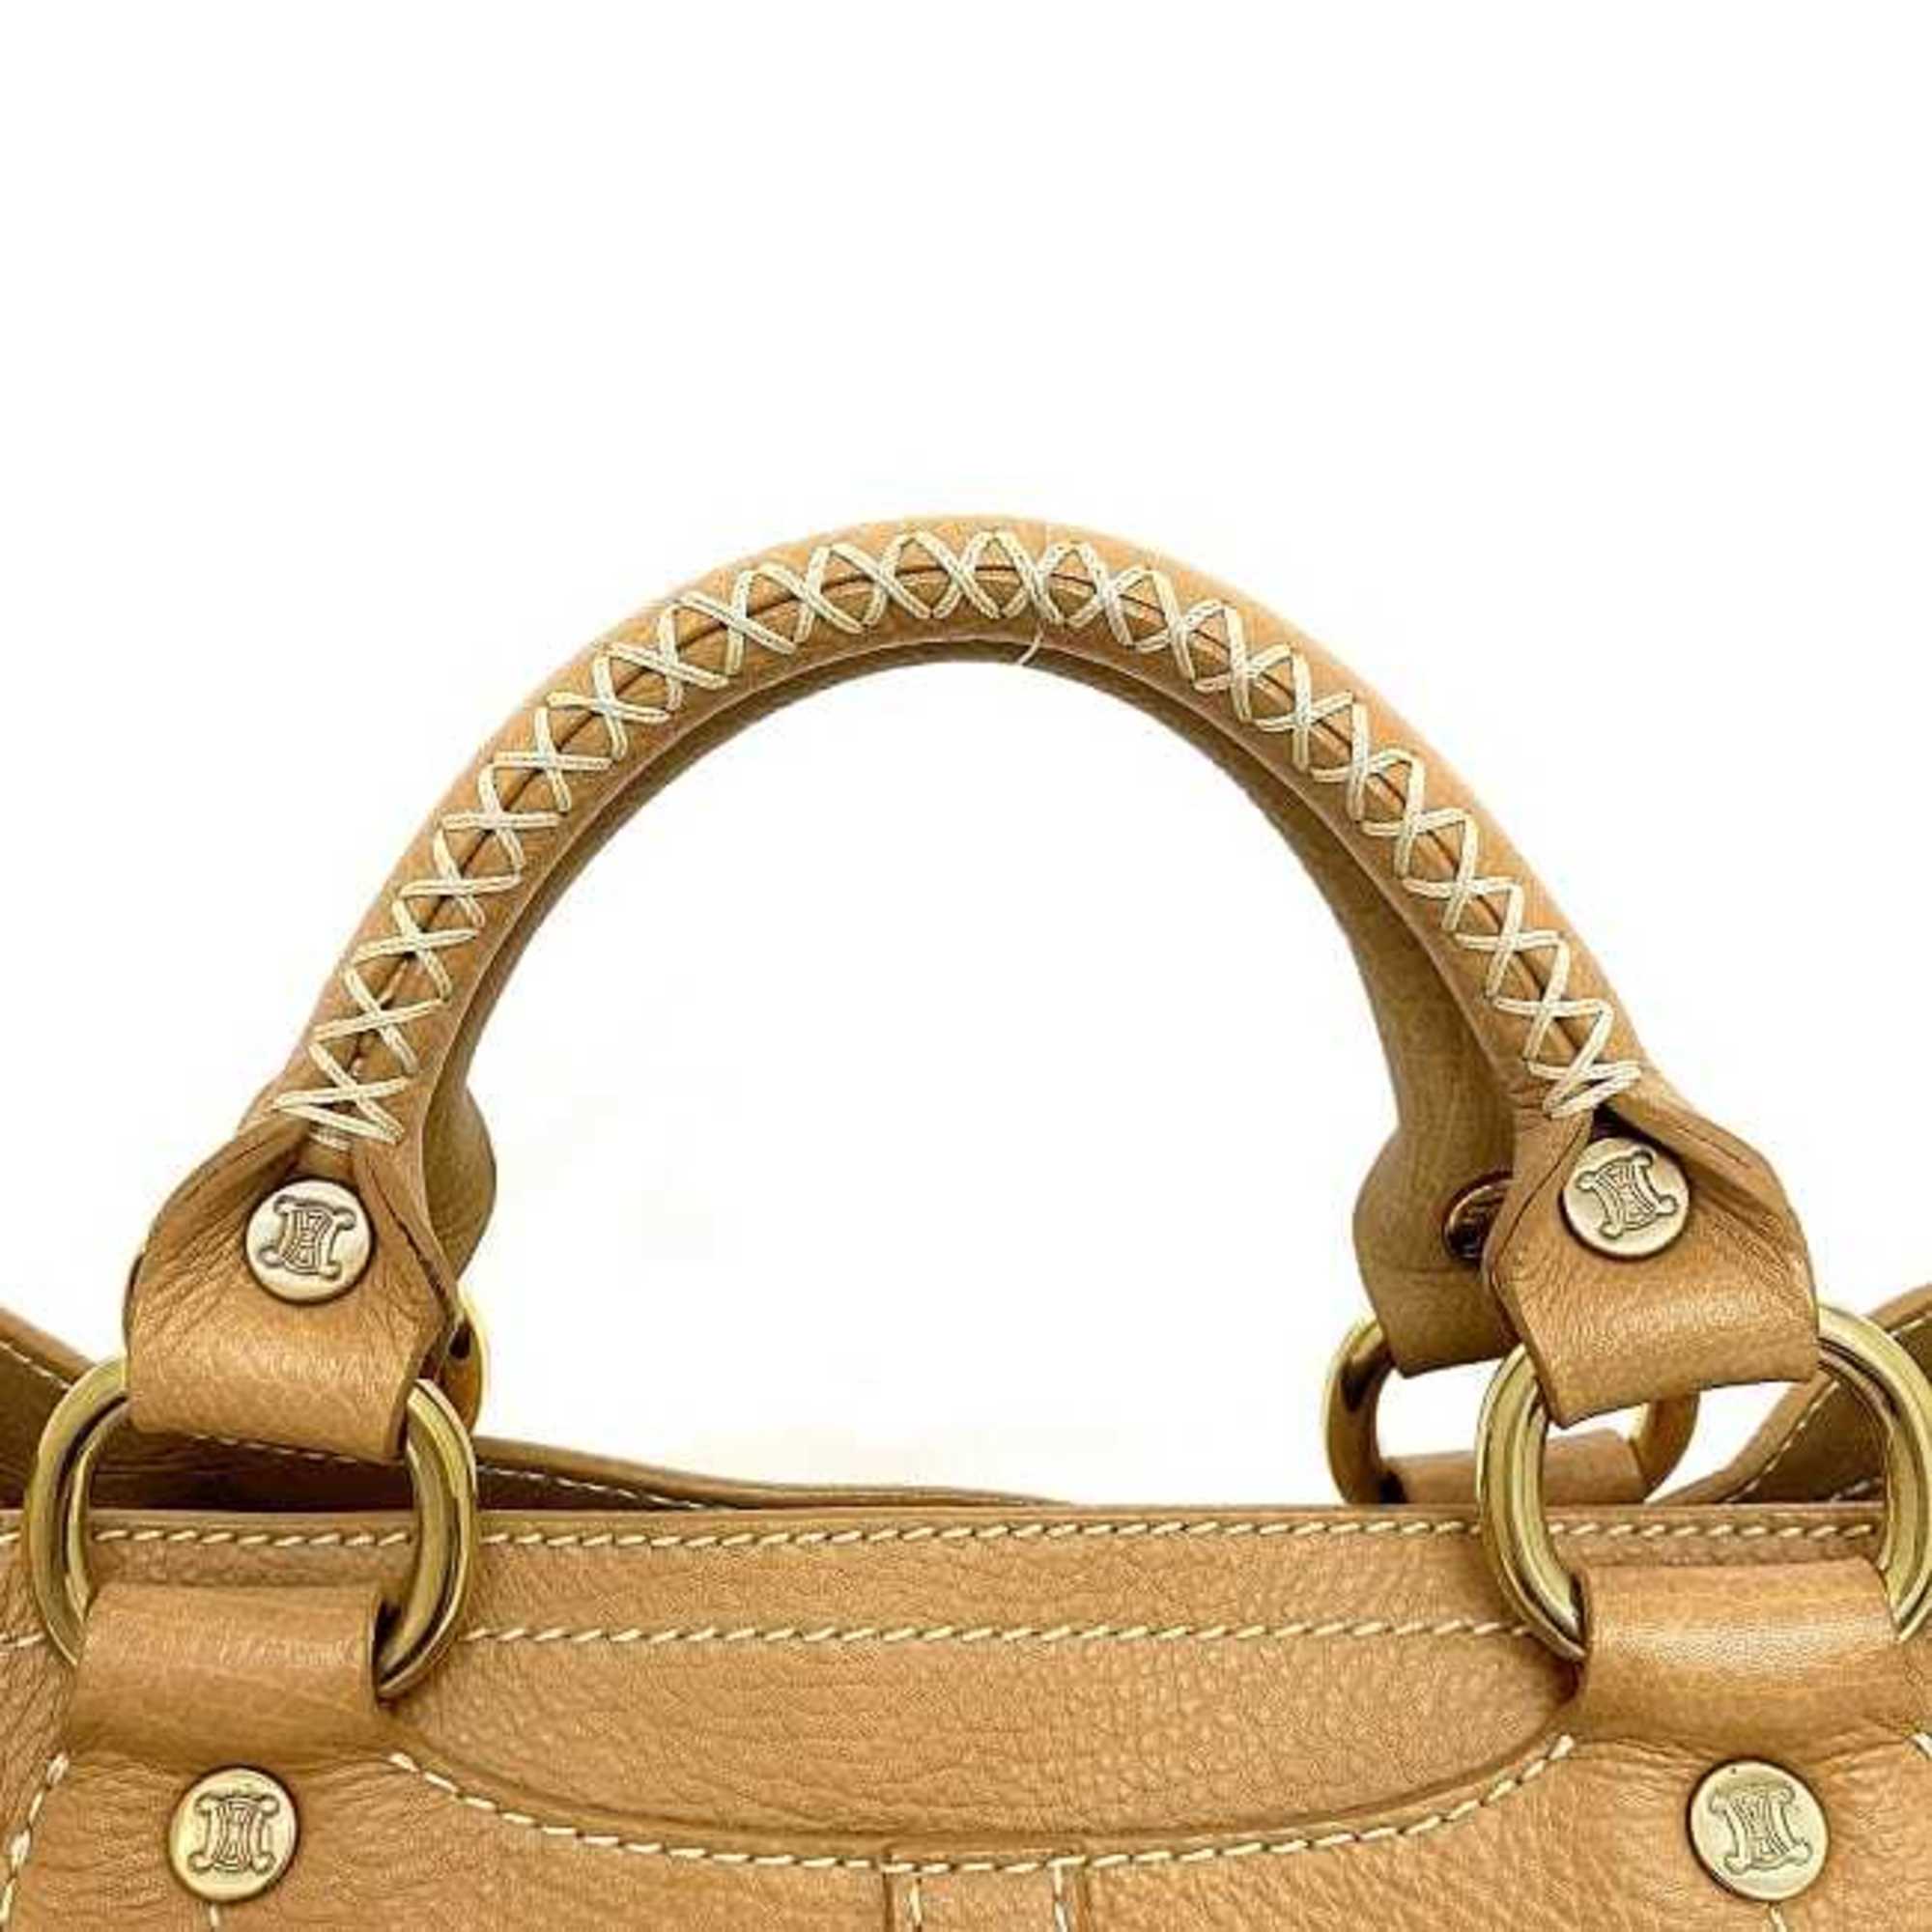 Celine Handbag Boogie Bag Beige ec-20552 Leather CELINE Pocket Stitch Tote Ladies